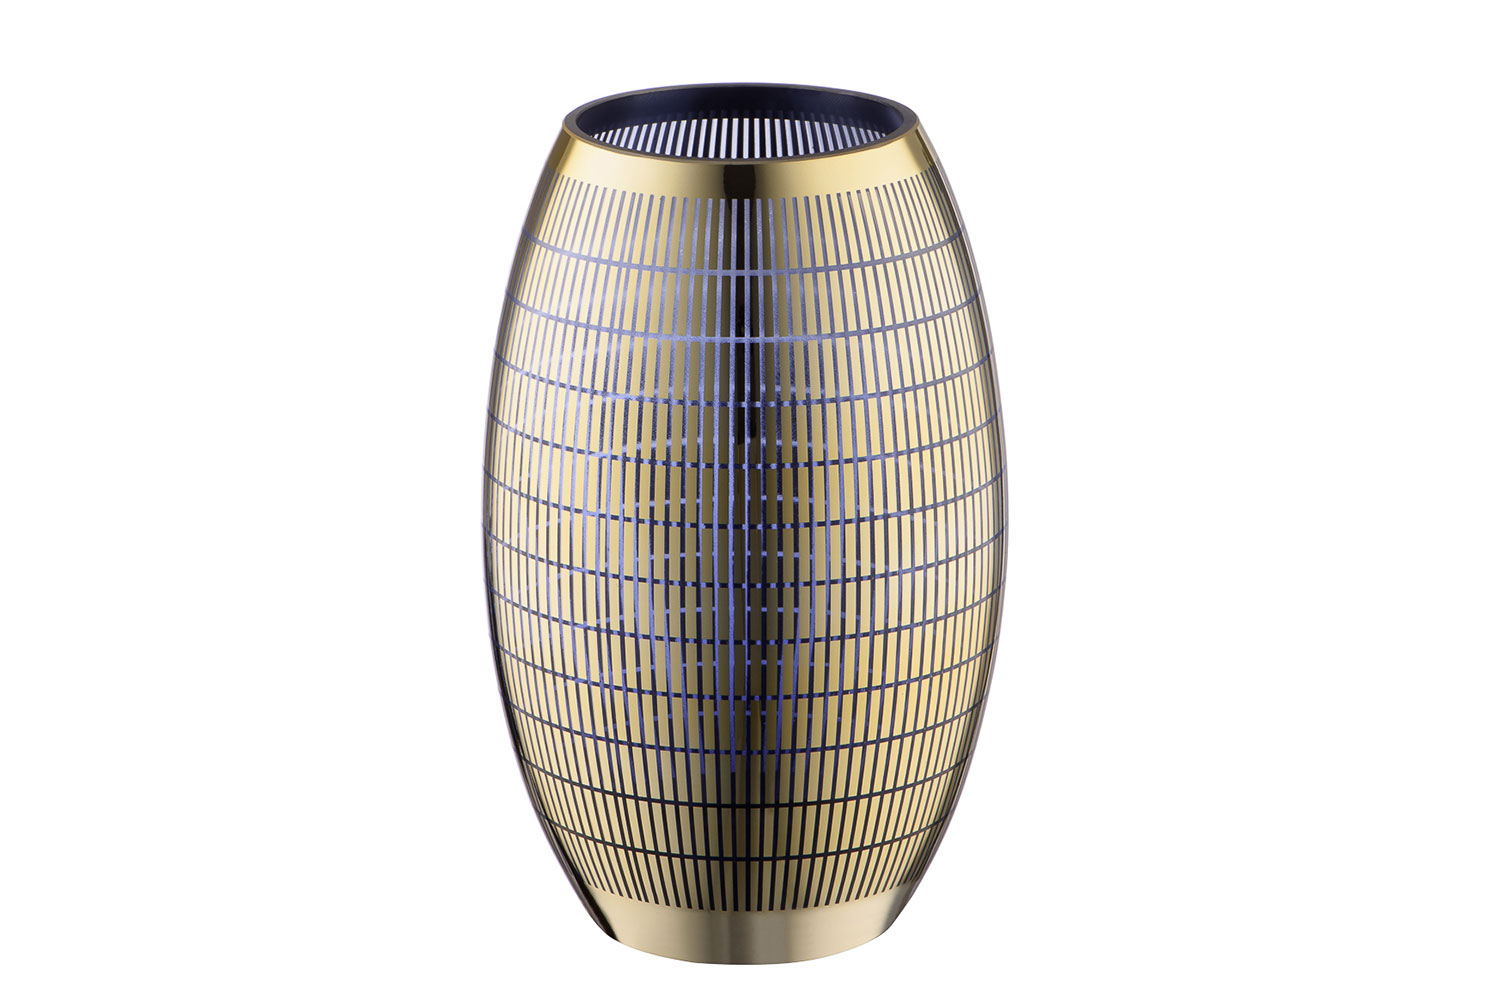 Декоративная ваза из стекла с золотым напылением, Д143 Ш143 В235, золотой